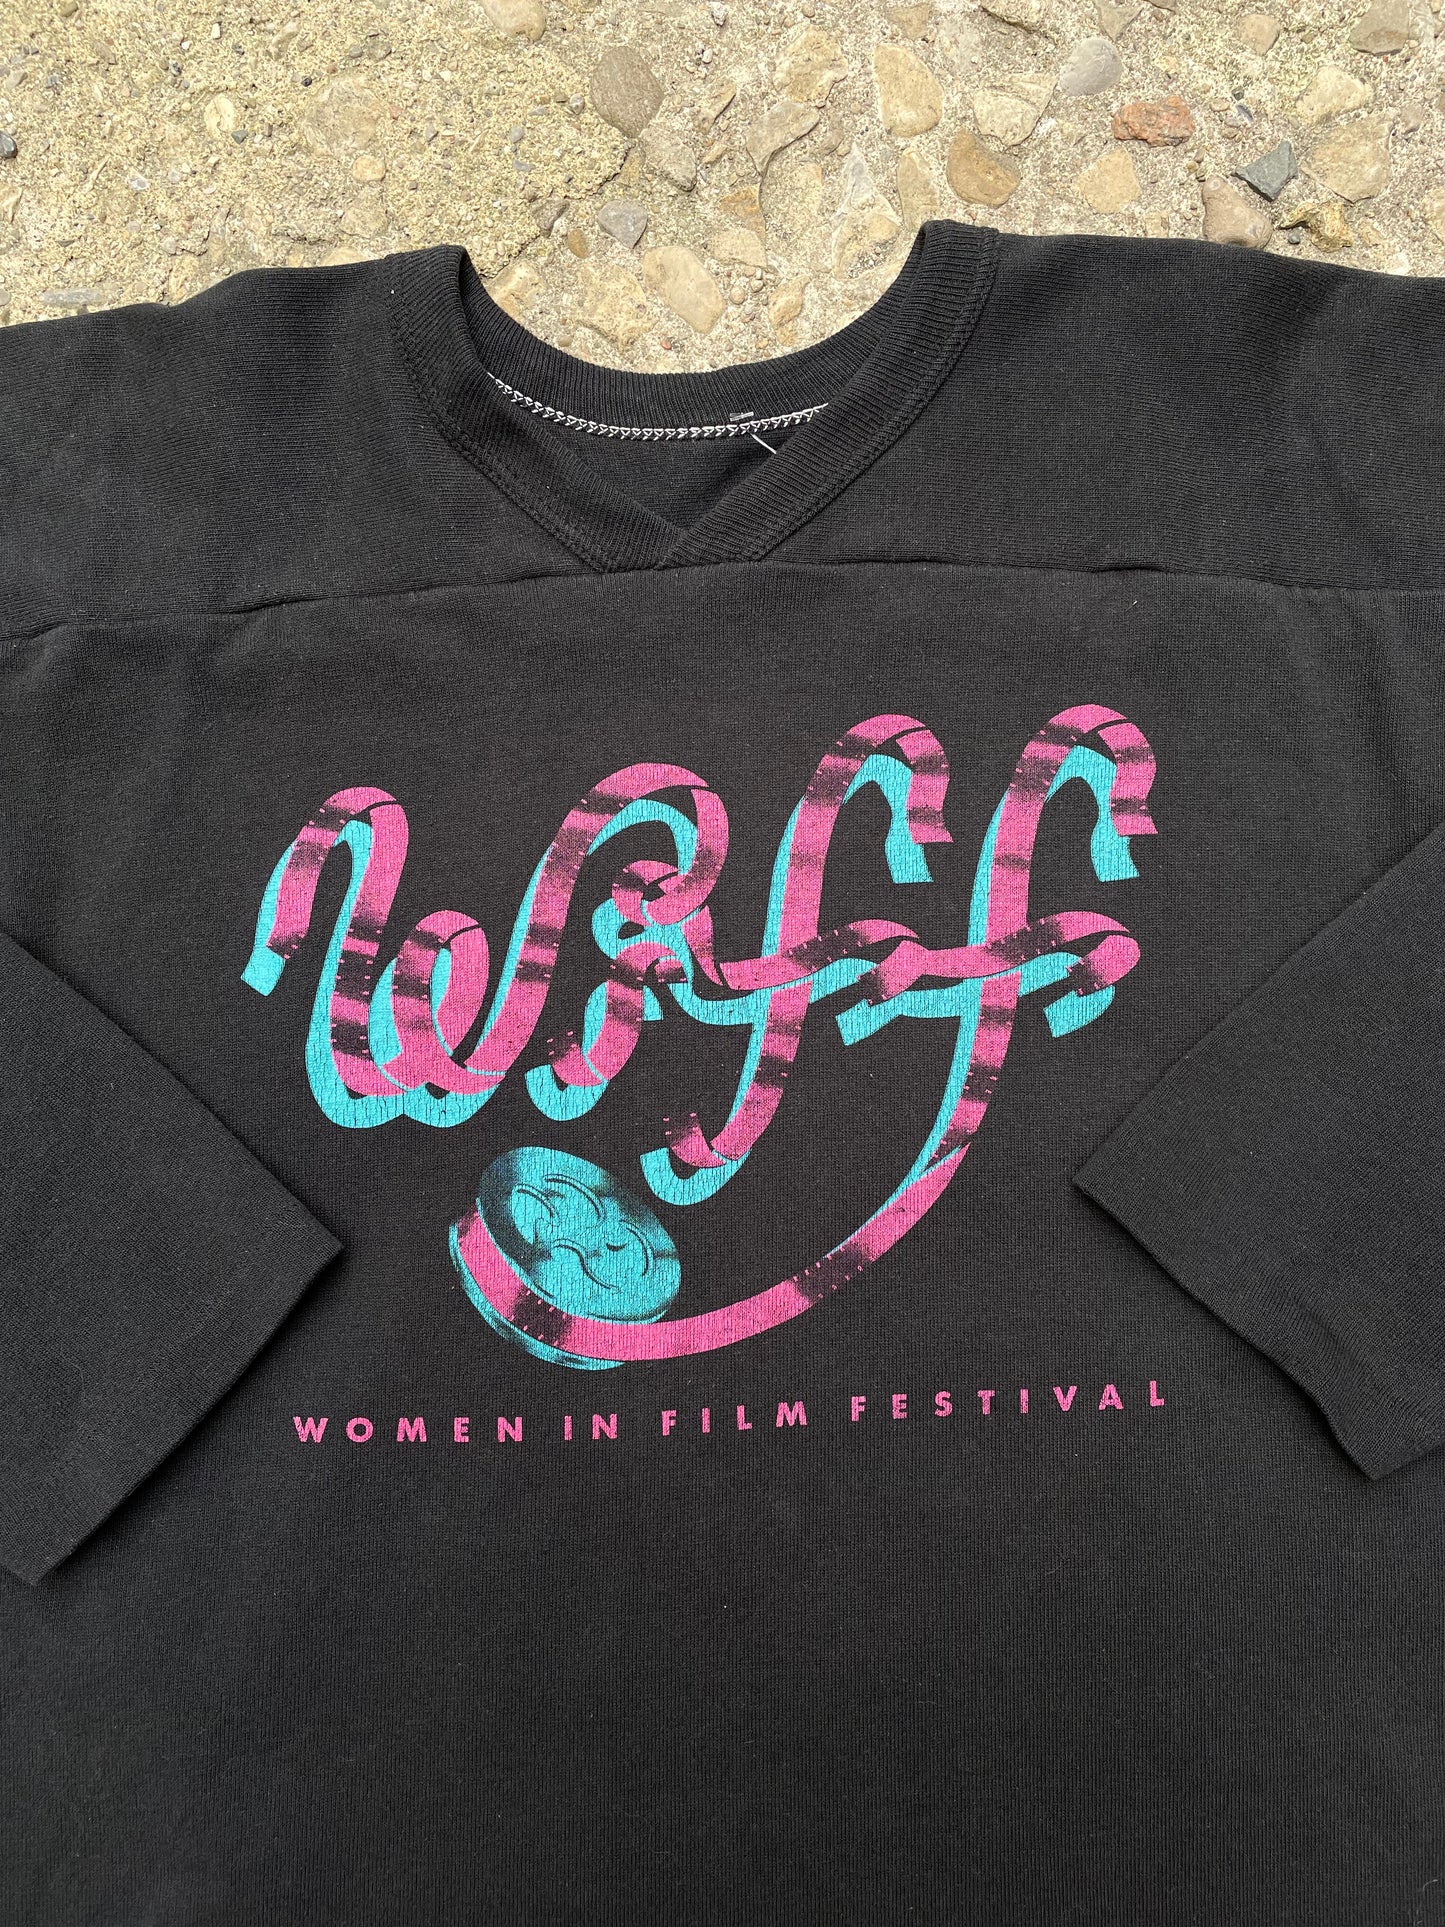 1980's Women in Film Festival (W.I.F.F.) Raglan Shirt - L